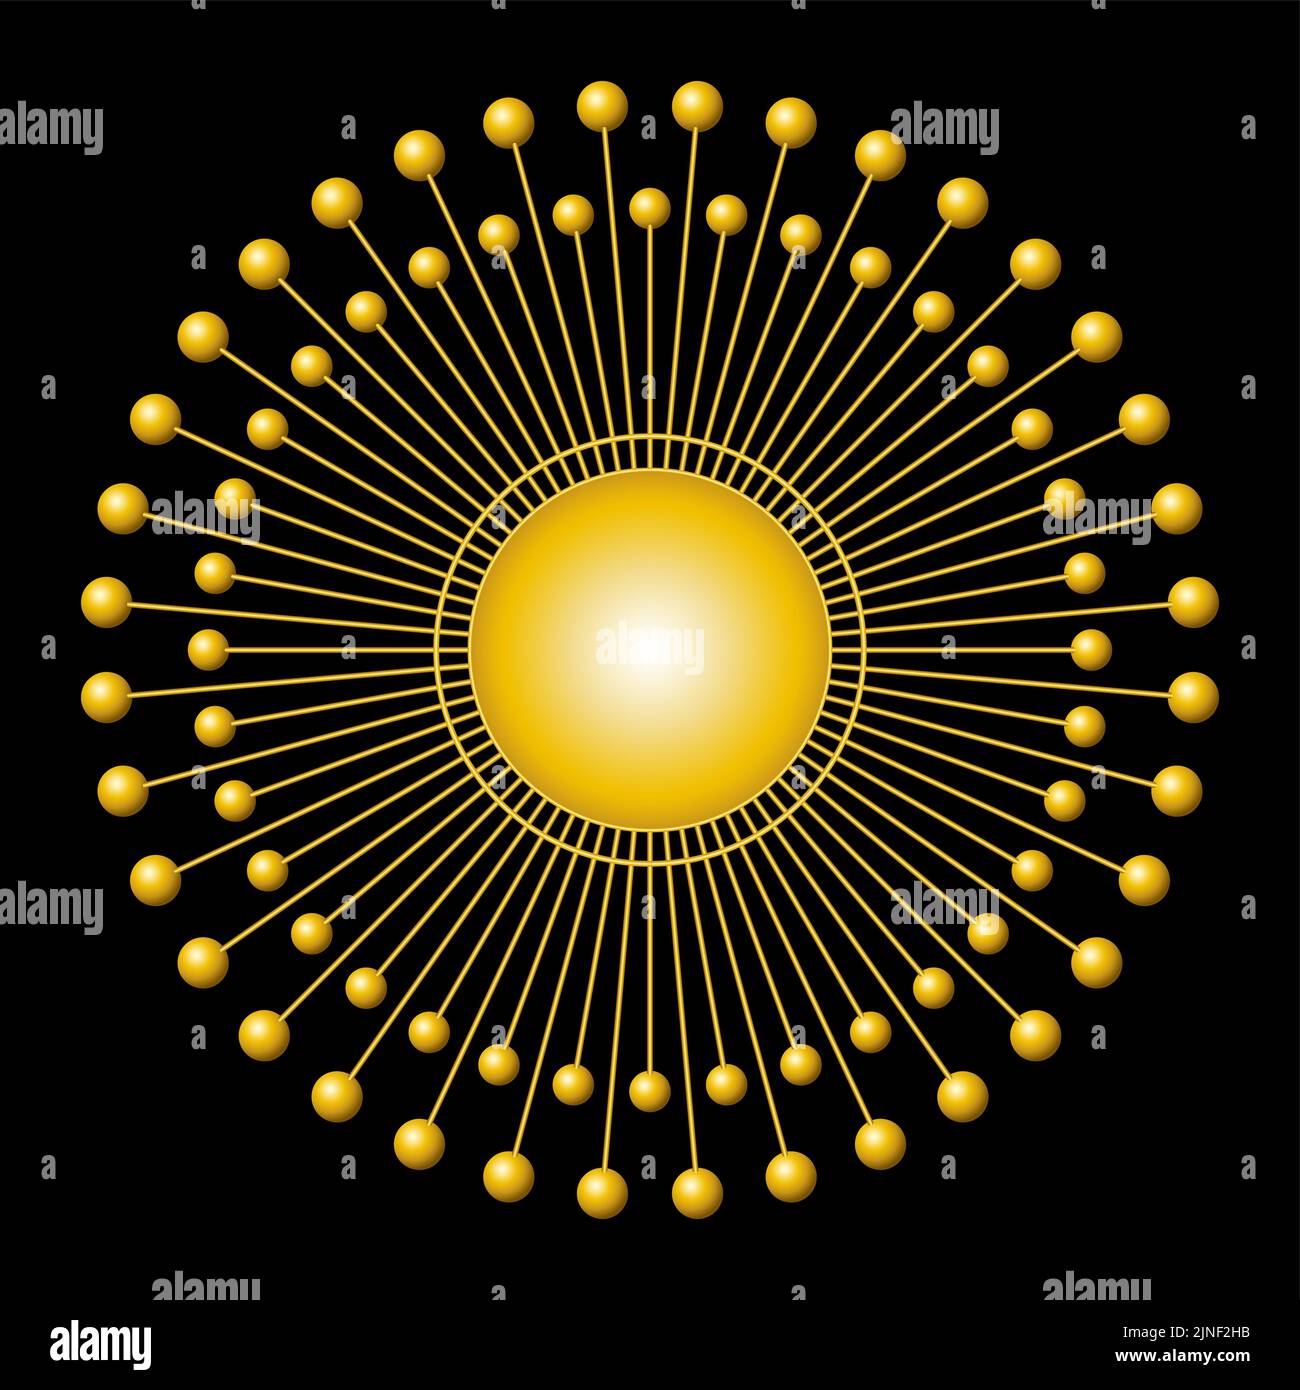 Simbolo del sole d'oro. Disco solare con 72 raggi di luce, con sfere ad ogni estremità, intorno ad un cerchio dorato al centro. Foto Stock